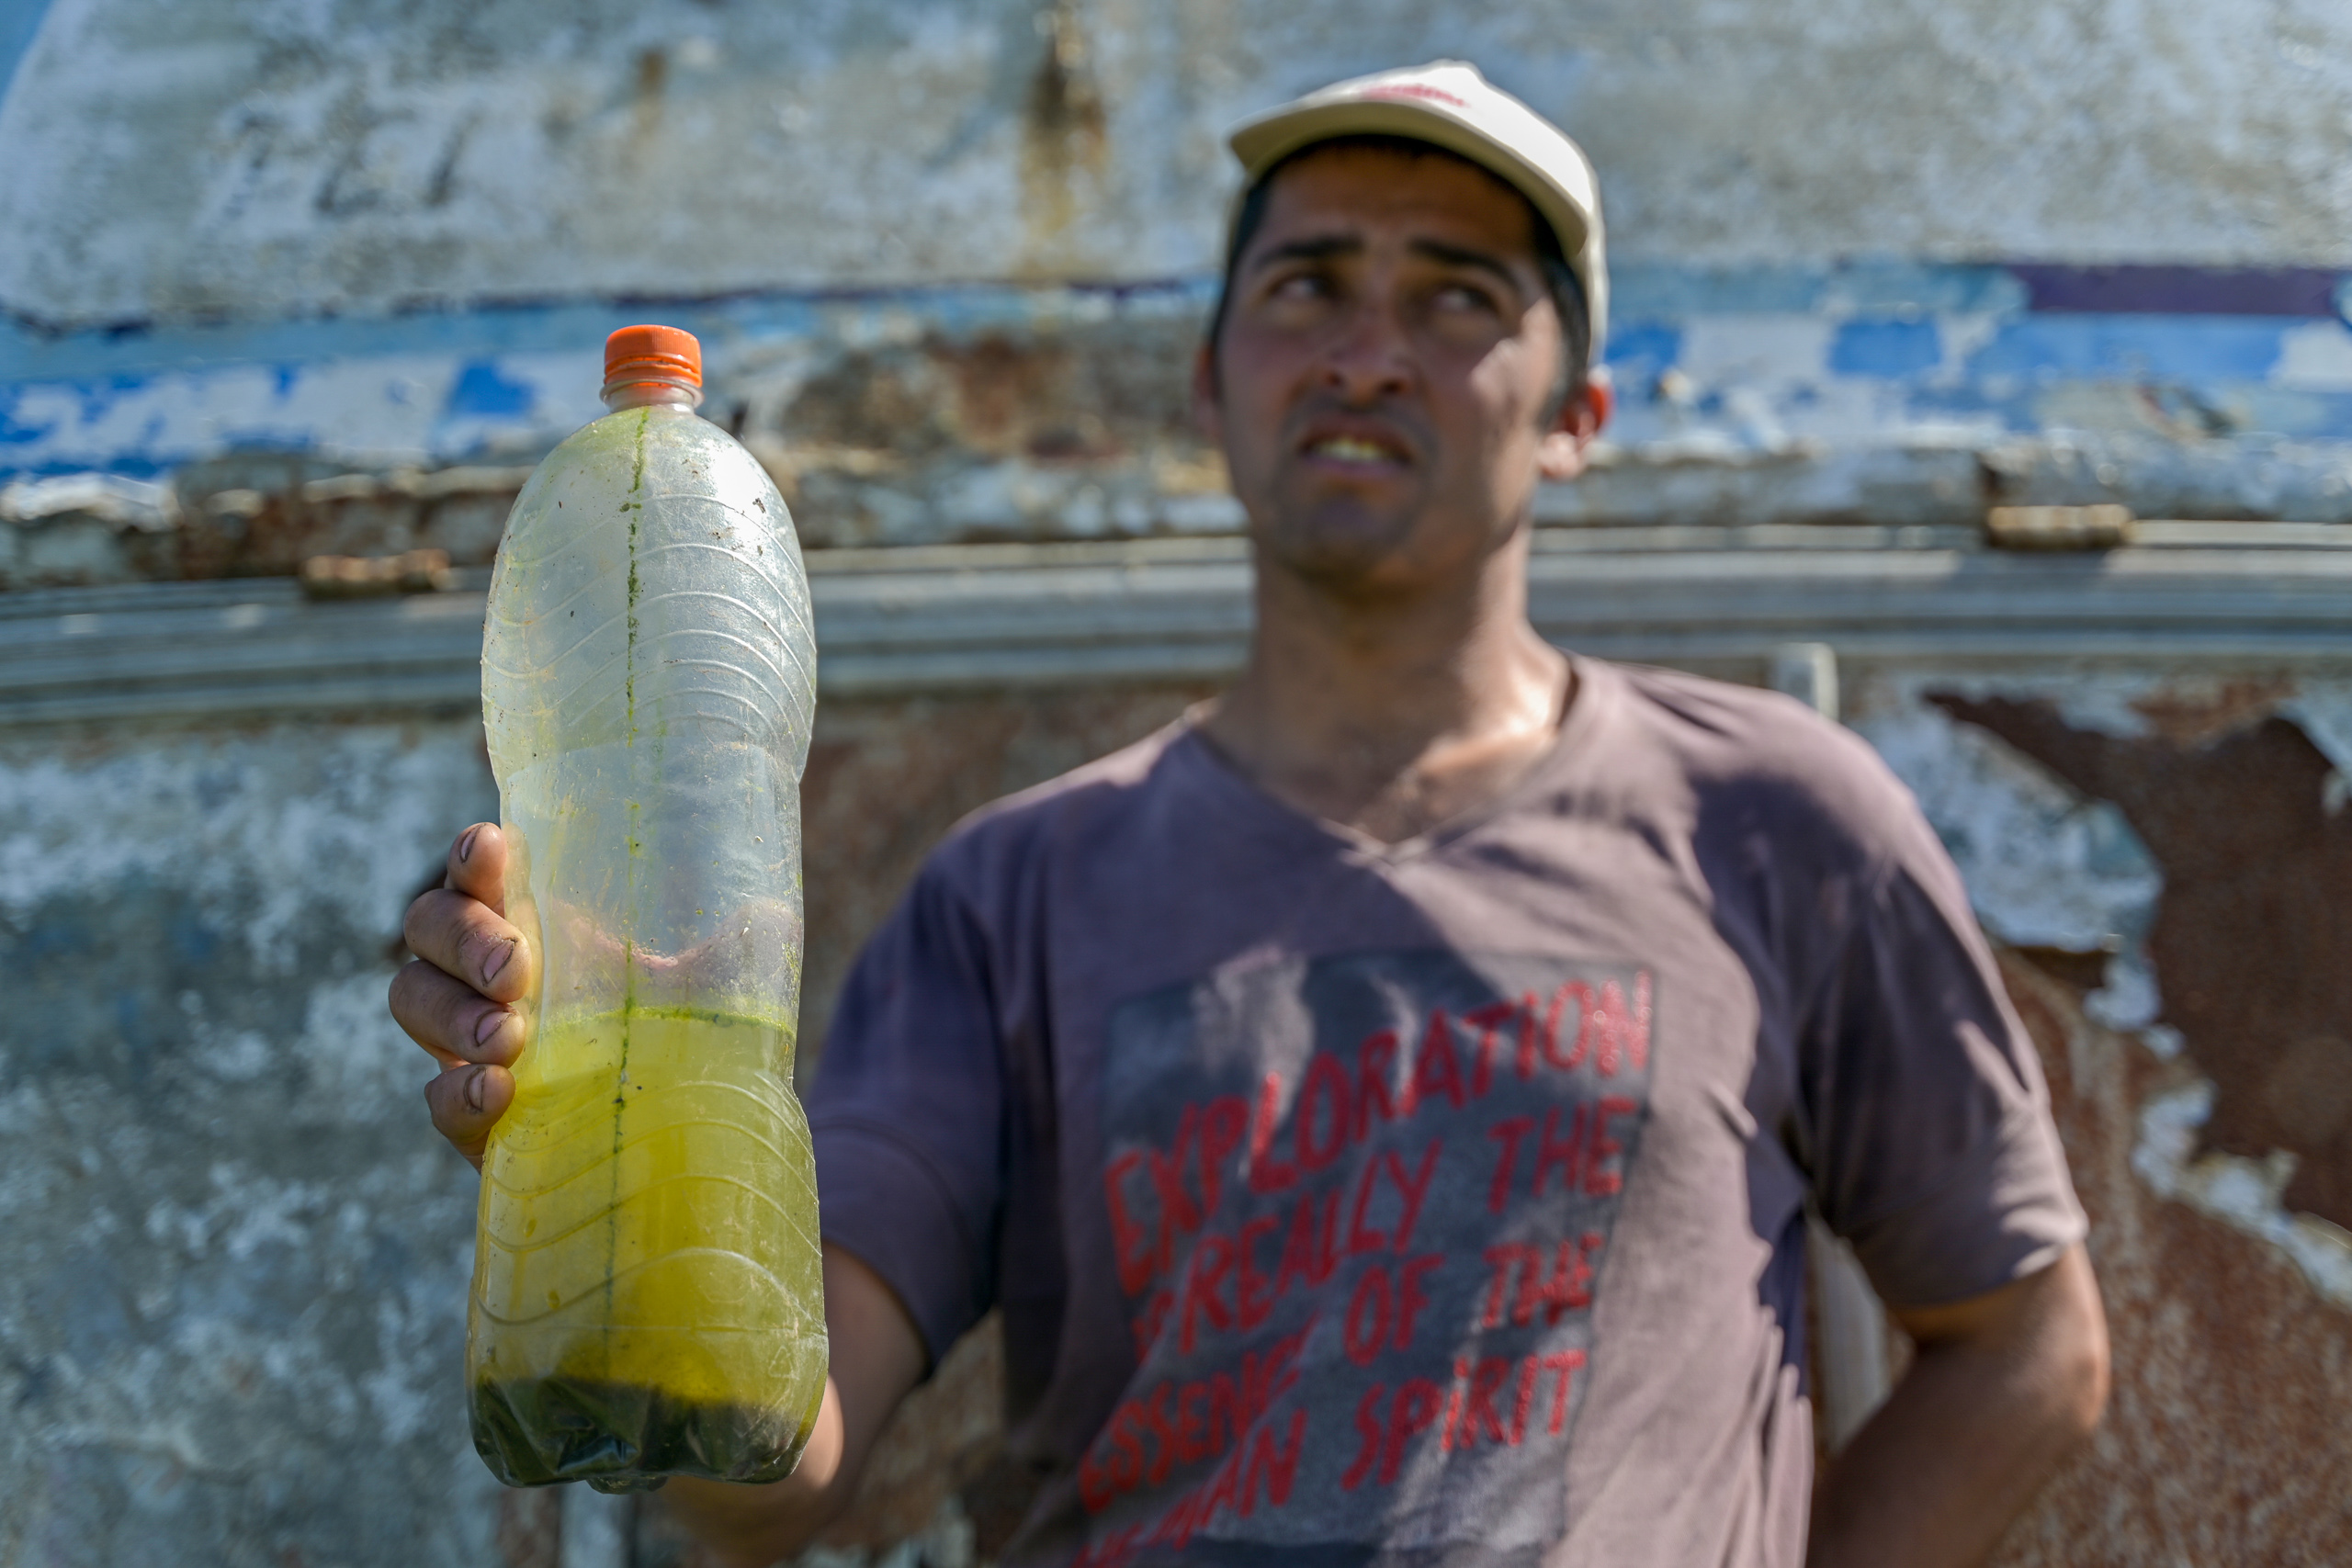 Un hombre sosteniendo una botella llena de un líquido amarillo